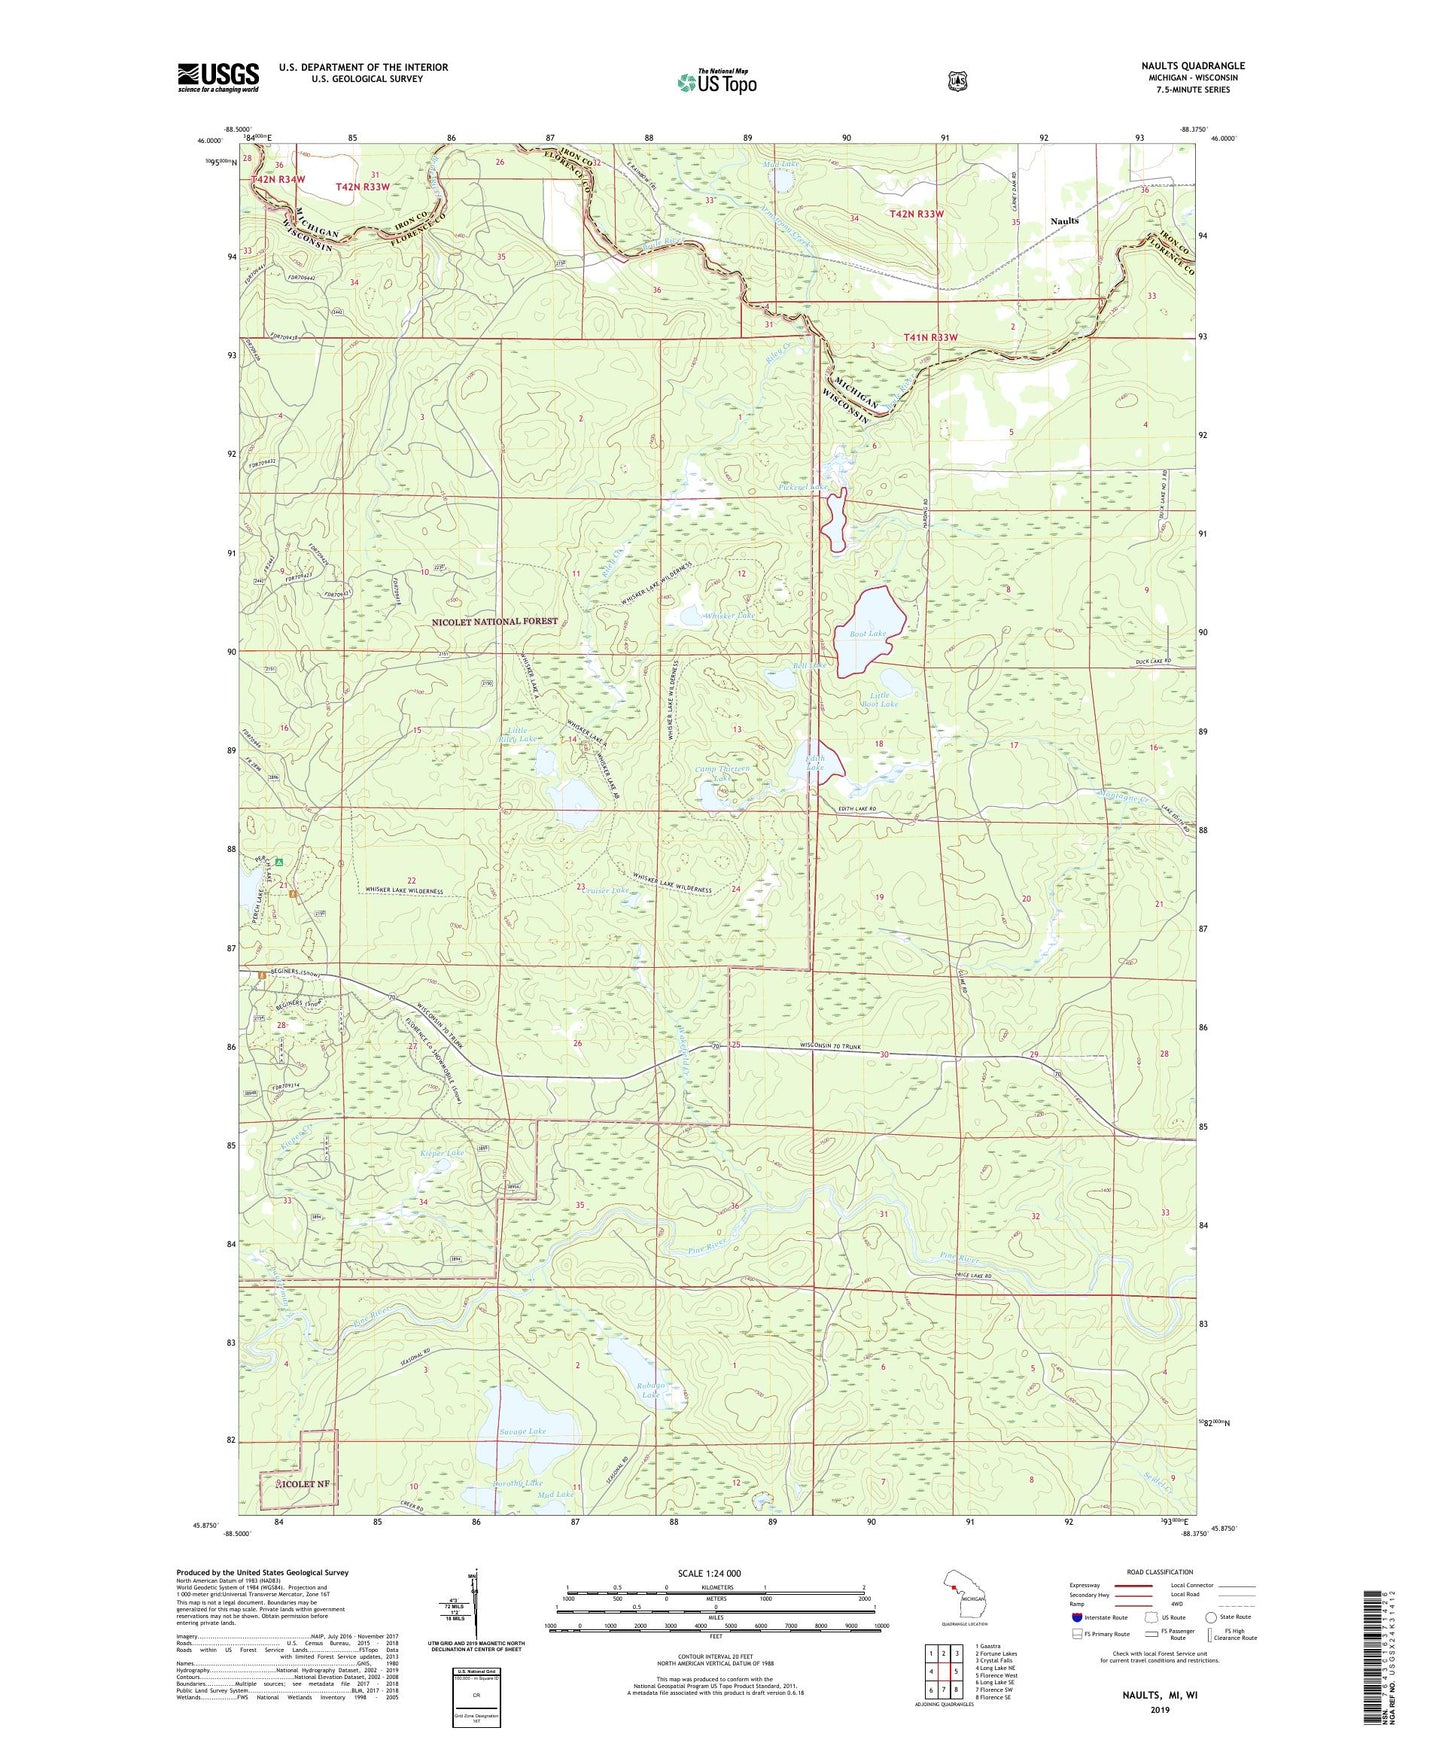 Naults Michigan US Topo Map Image